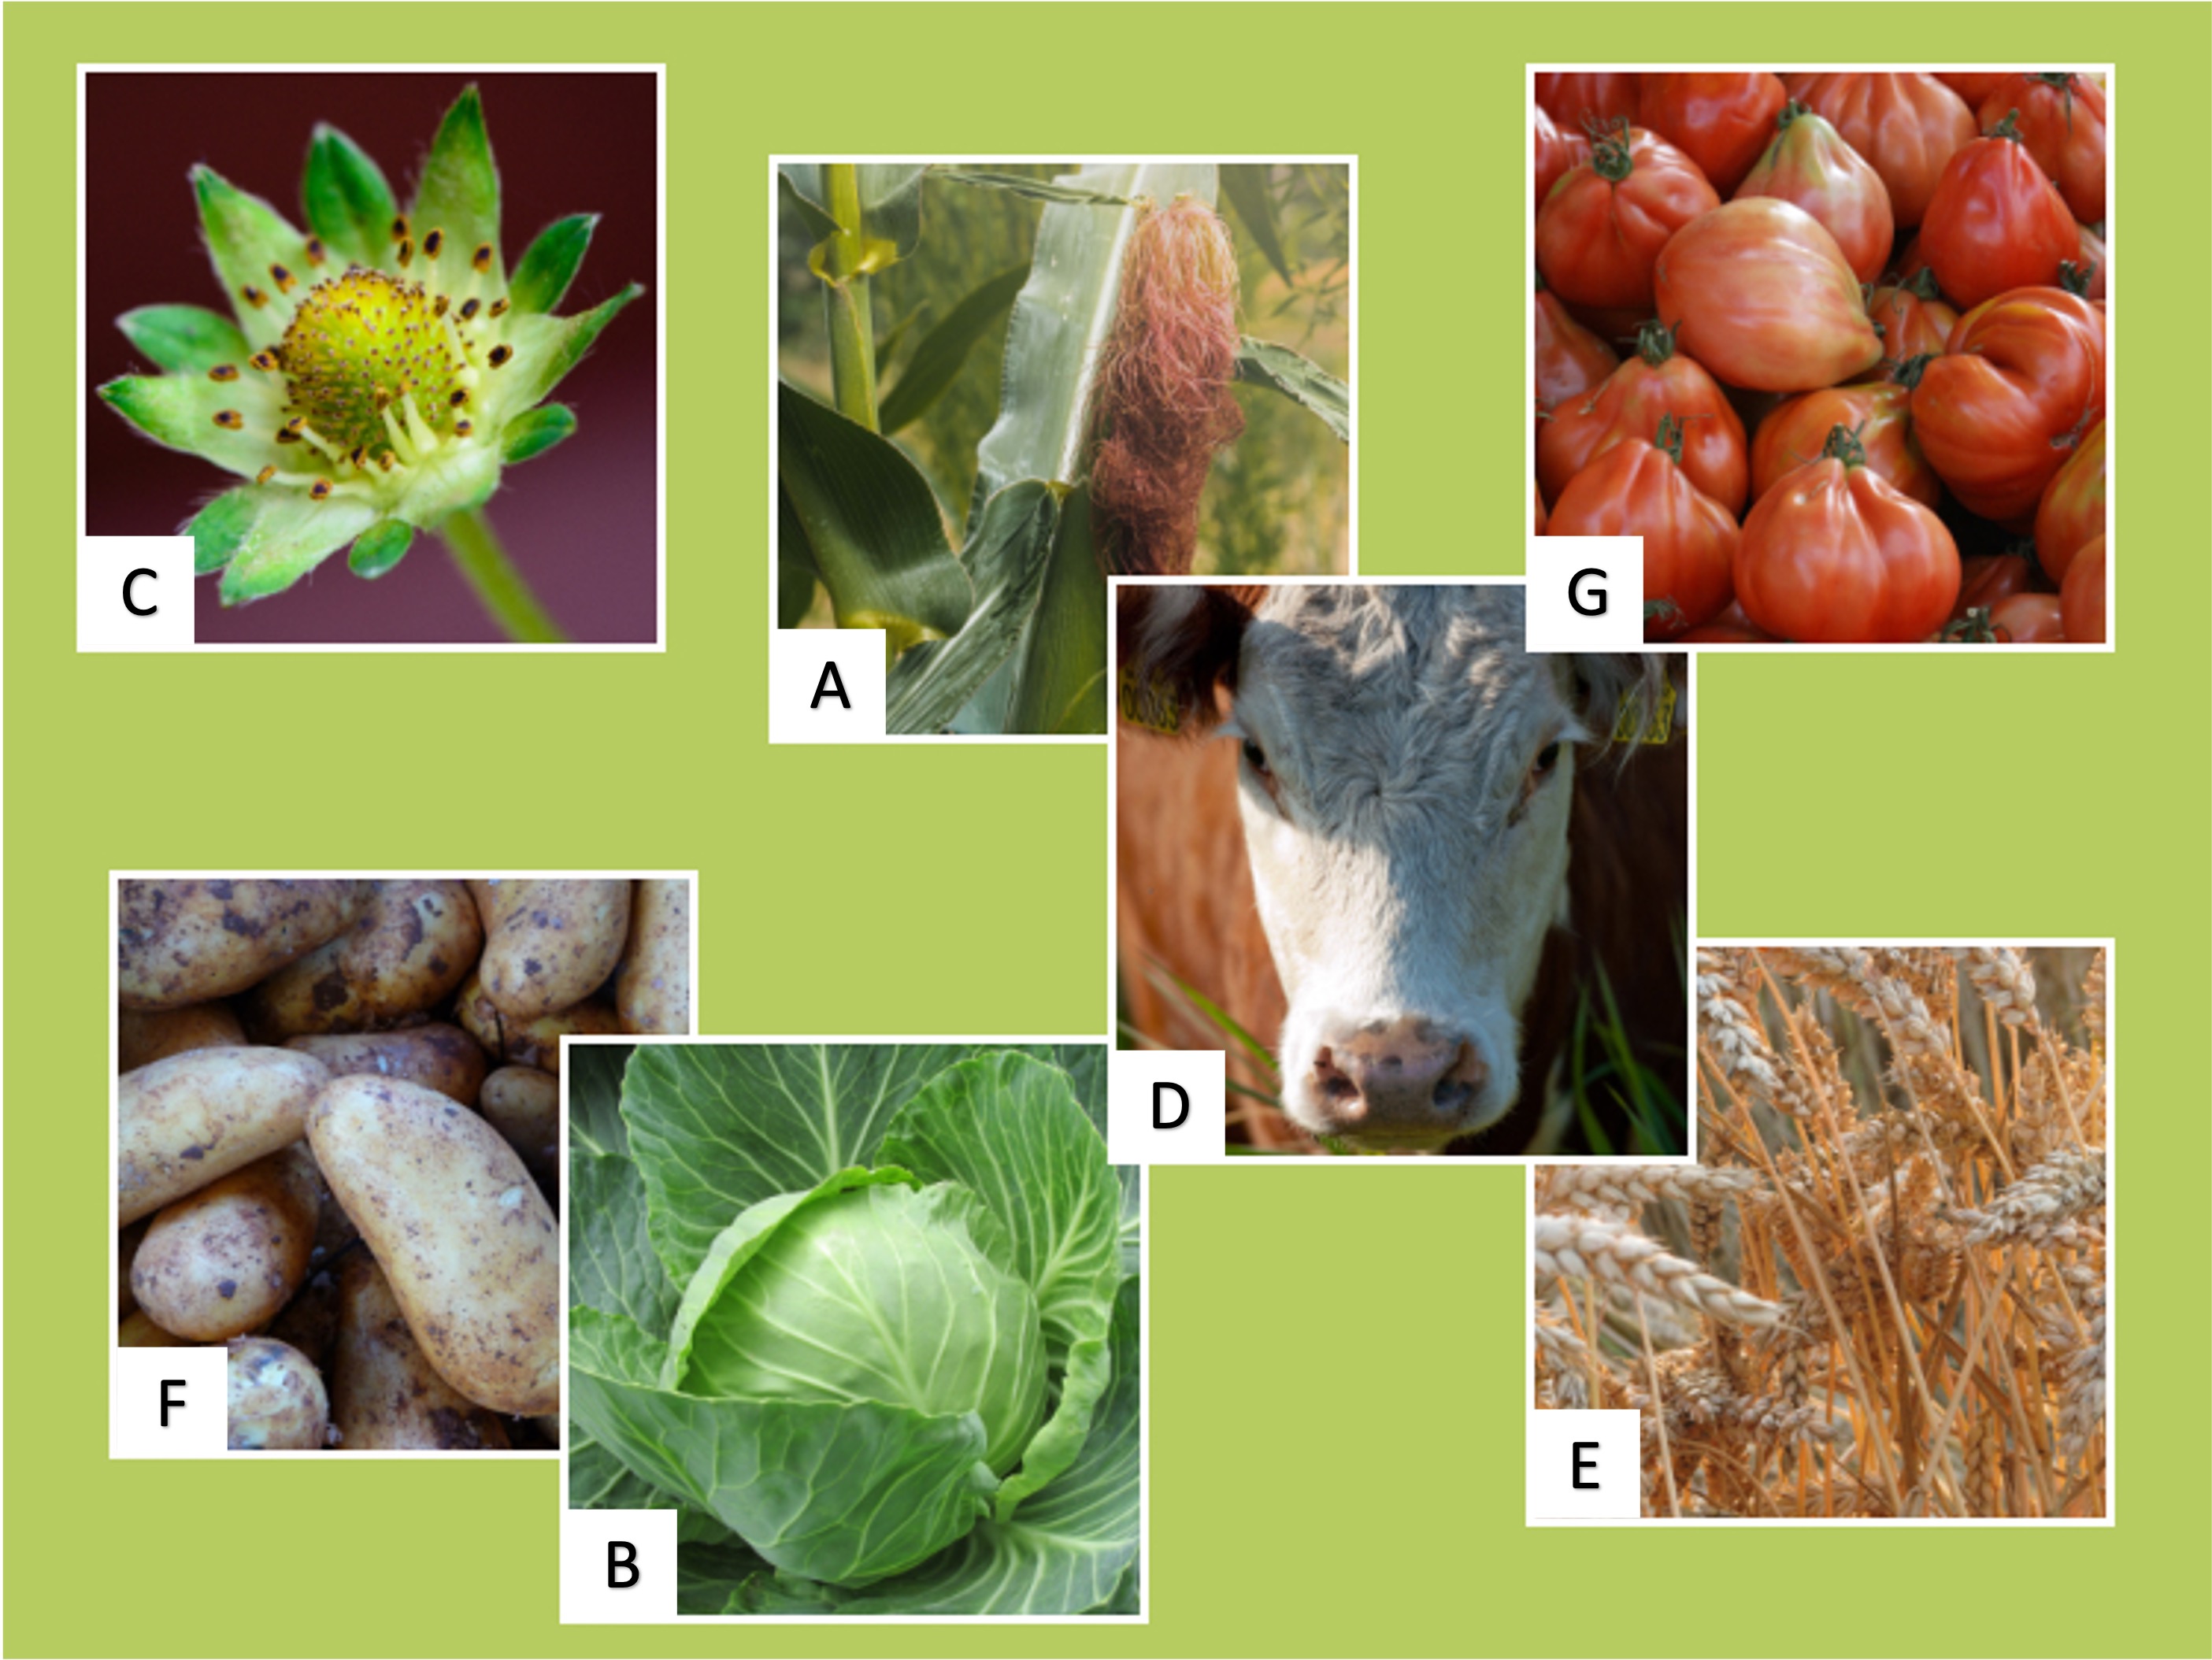 Bilder von einer Erdbeere, Maiskolben, Tomaten, Kartoffeln, Kuh, Weißkohl und Weizen